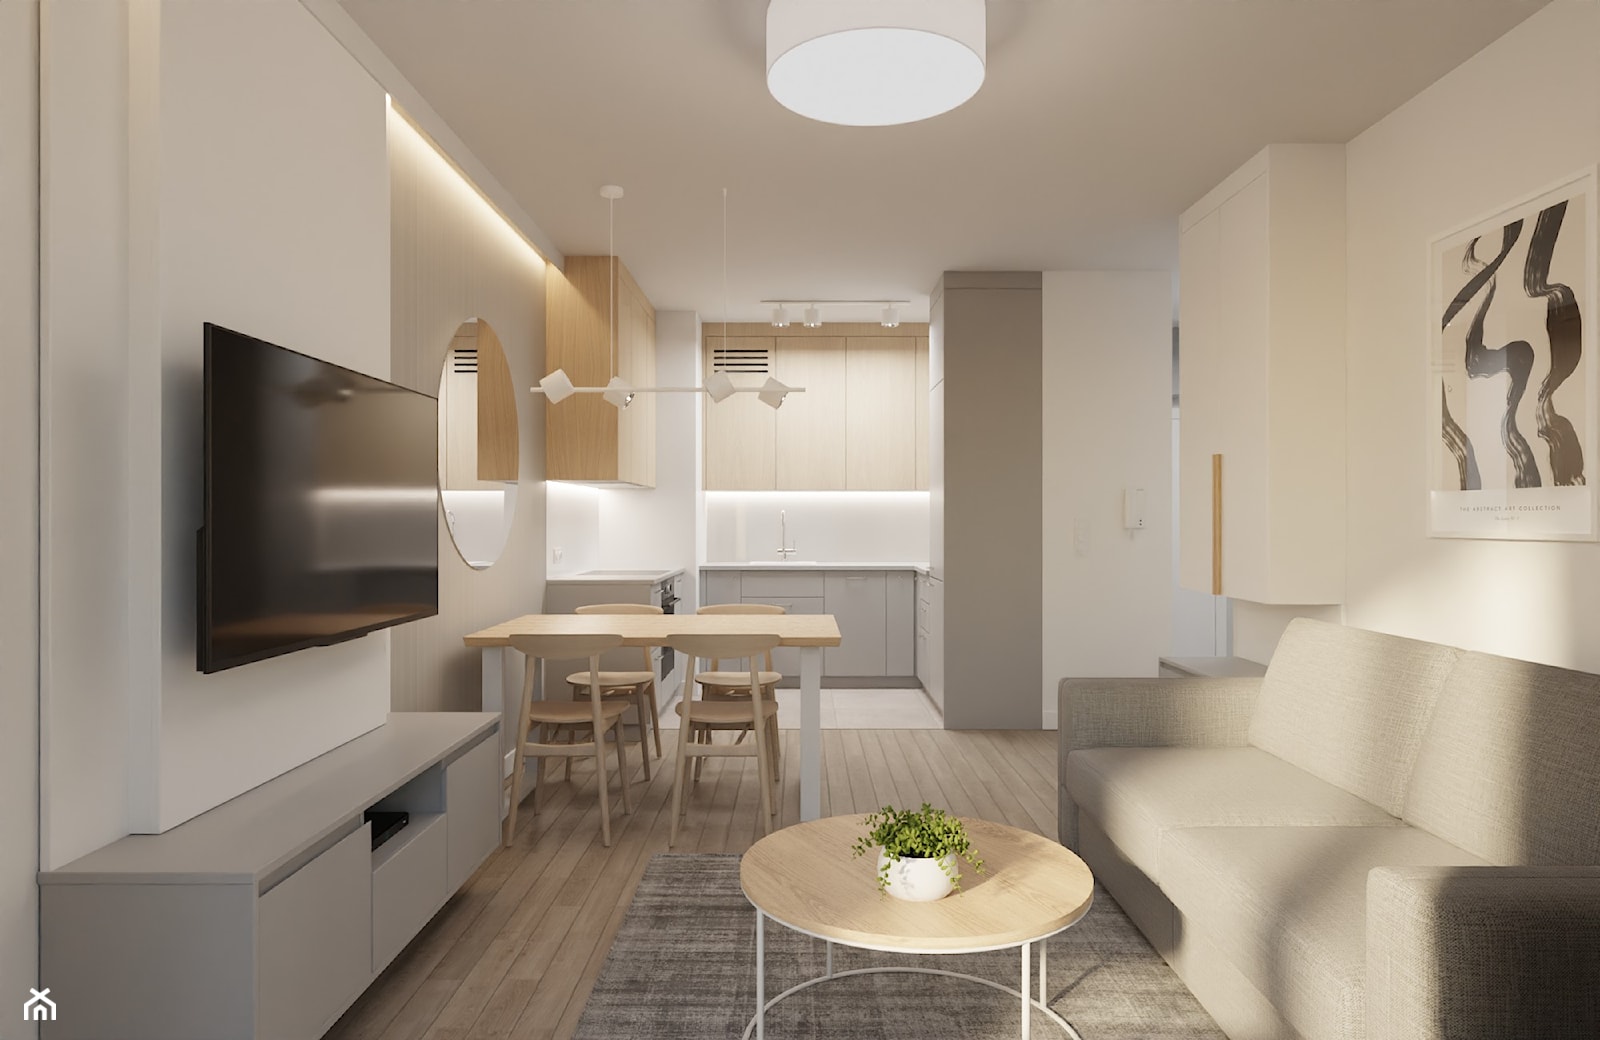 Mieszkanie w stylu minimalistycznym w jasnej kolorystyce - Salon, styl minimalistyczny - zdjęcie od Projektowanie Wnetrz Online - Homebook